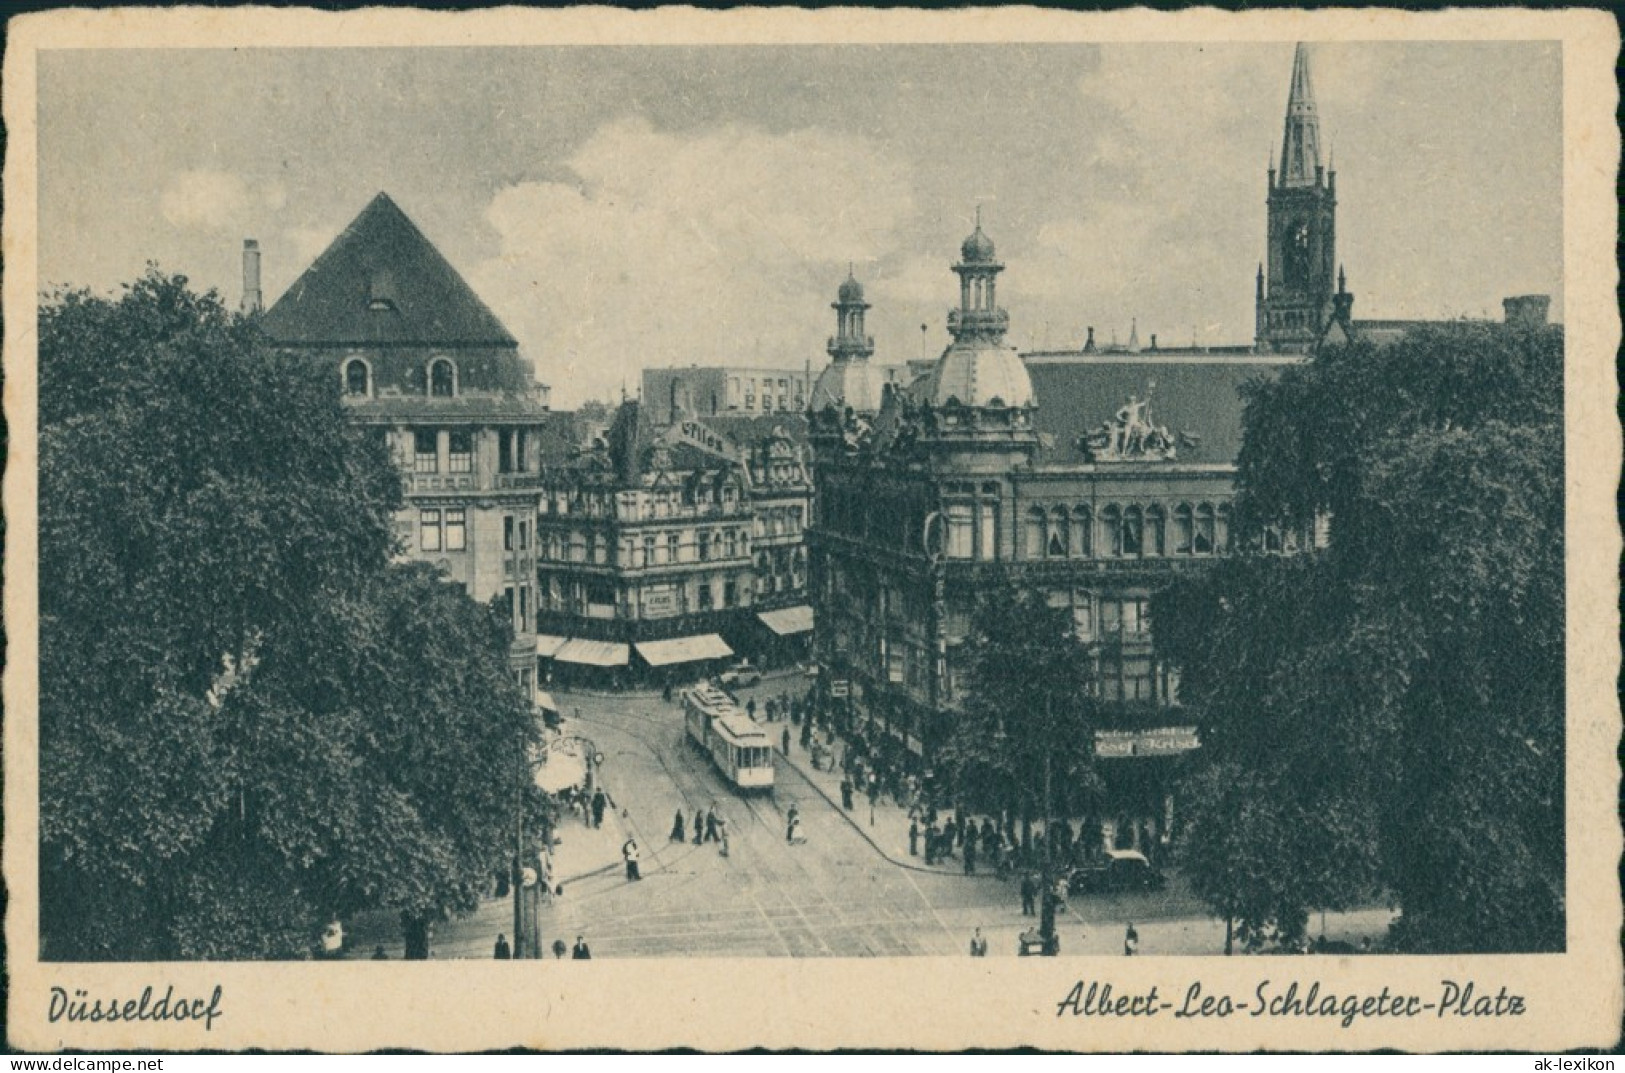 Ansichtskarte Düsseldorf Albert Leo Schlageter Platz 1937  - Duesseldorf